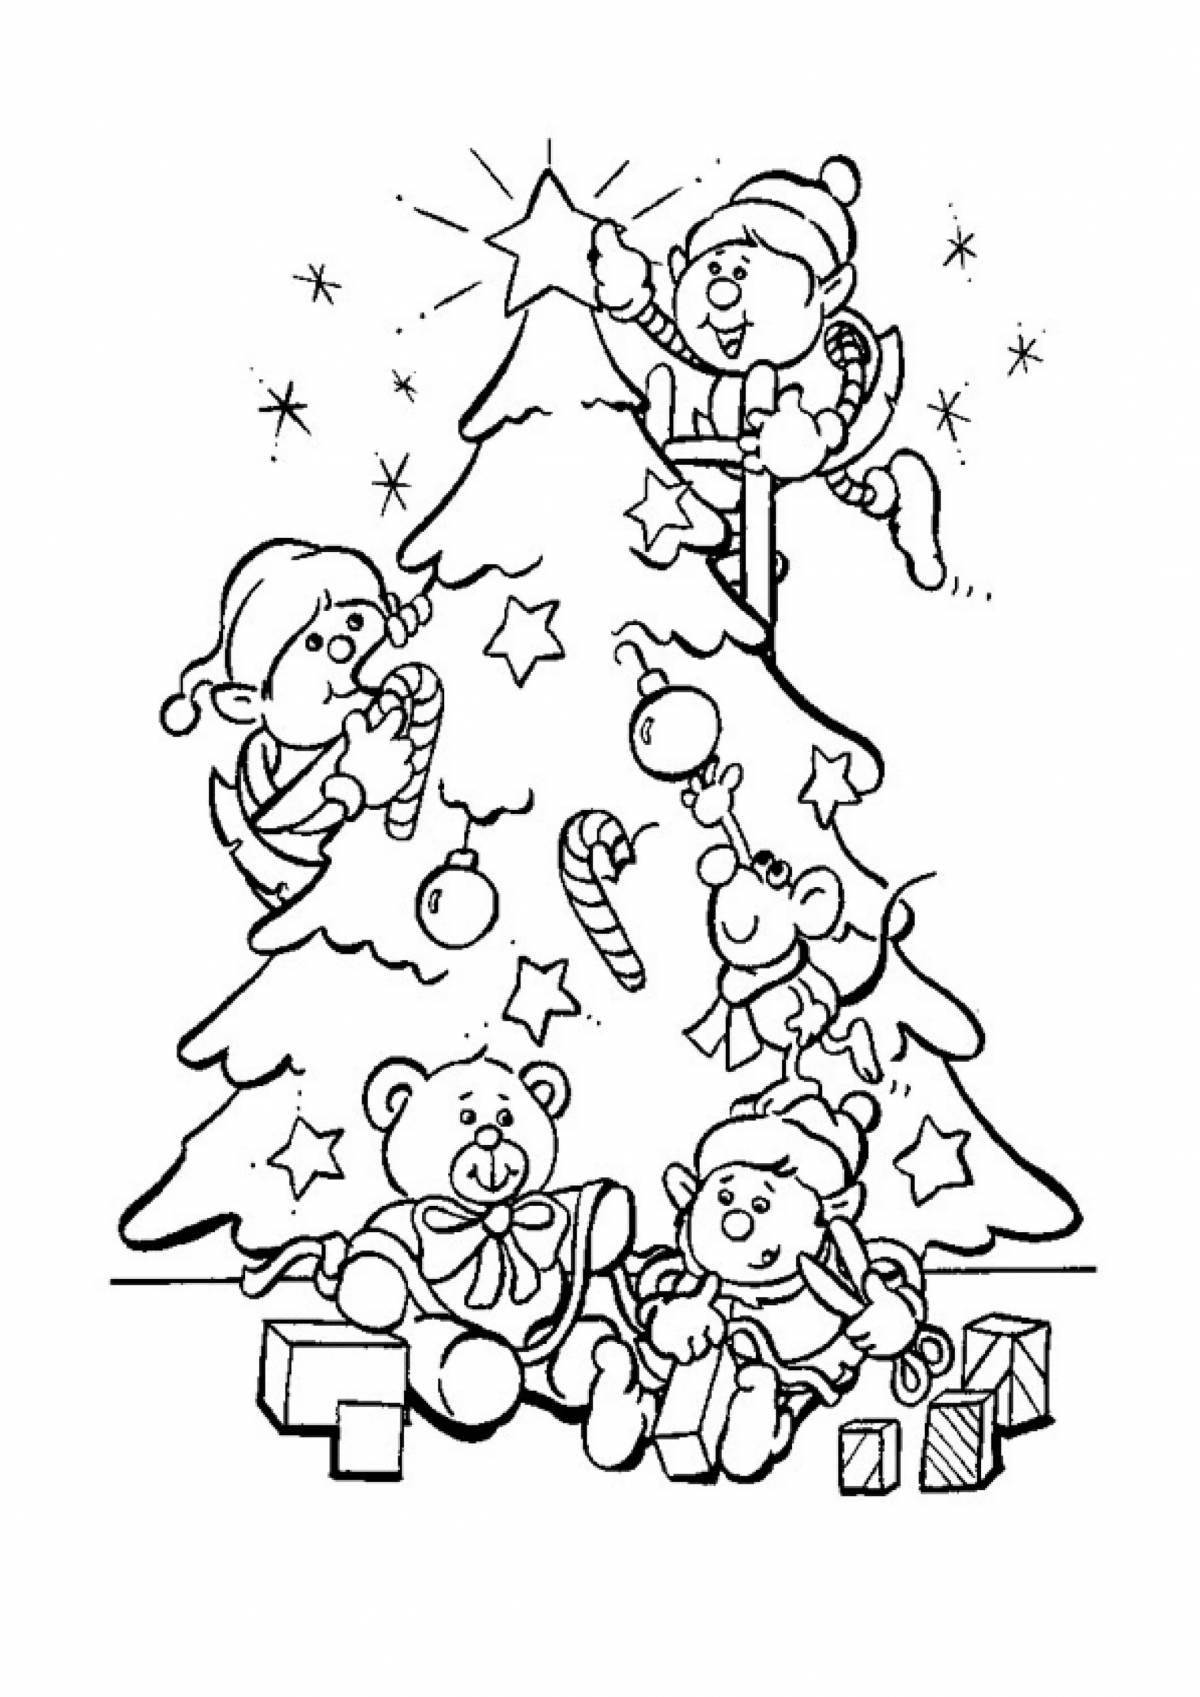 Playful Christmas drawing for kids